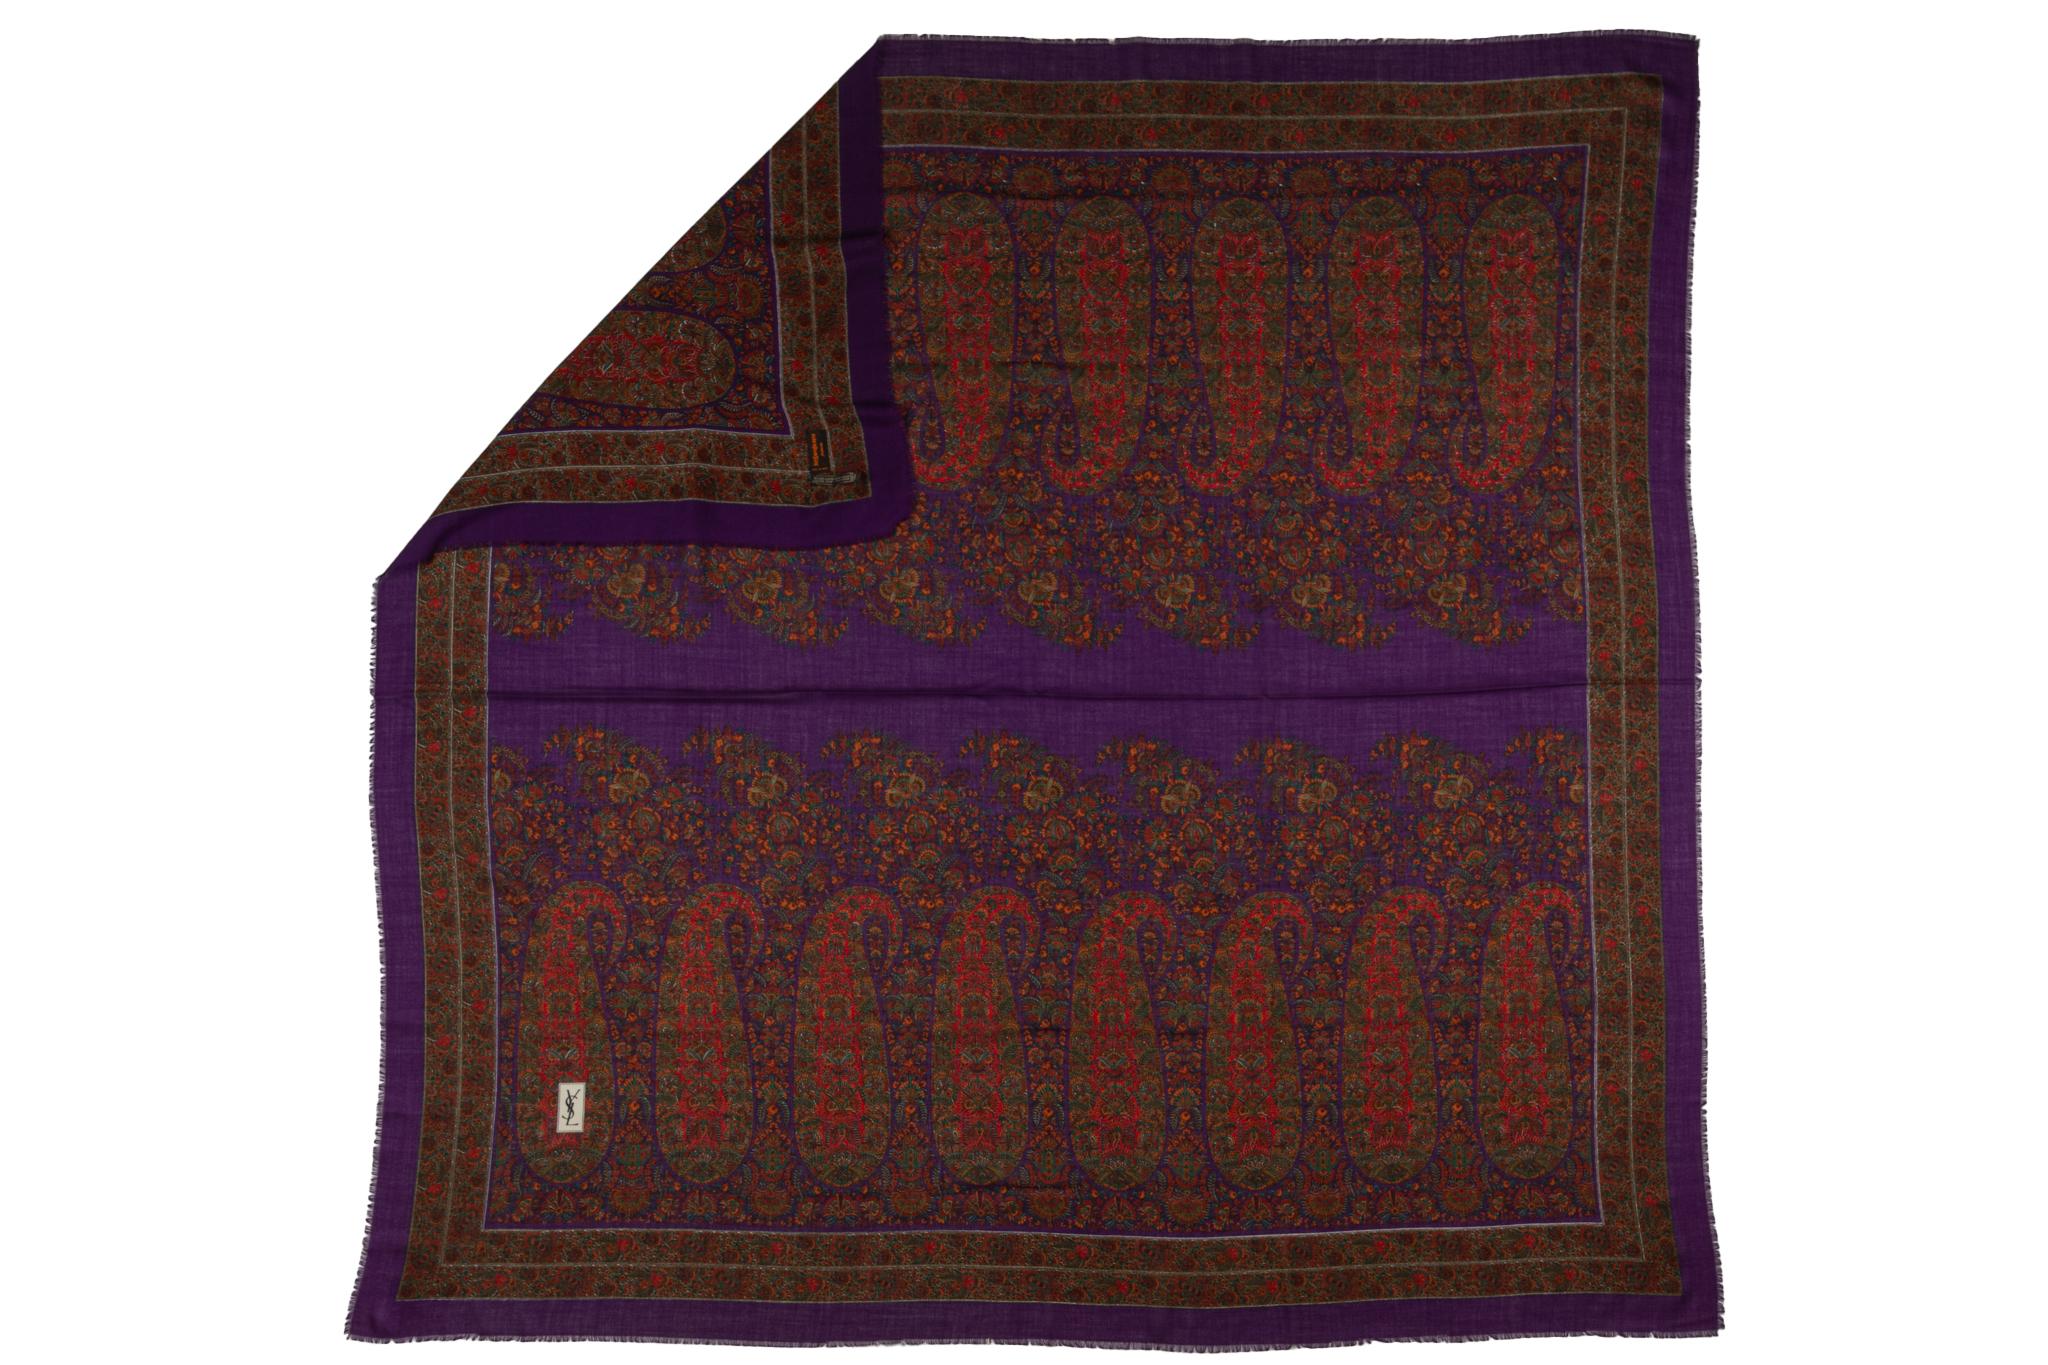 Großer Vintage-Schal von YSL aus Wolle und Seide. Mehrfarbiges Paisleymuster. Kein Label.